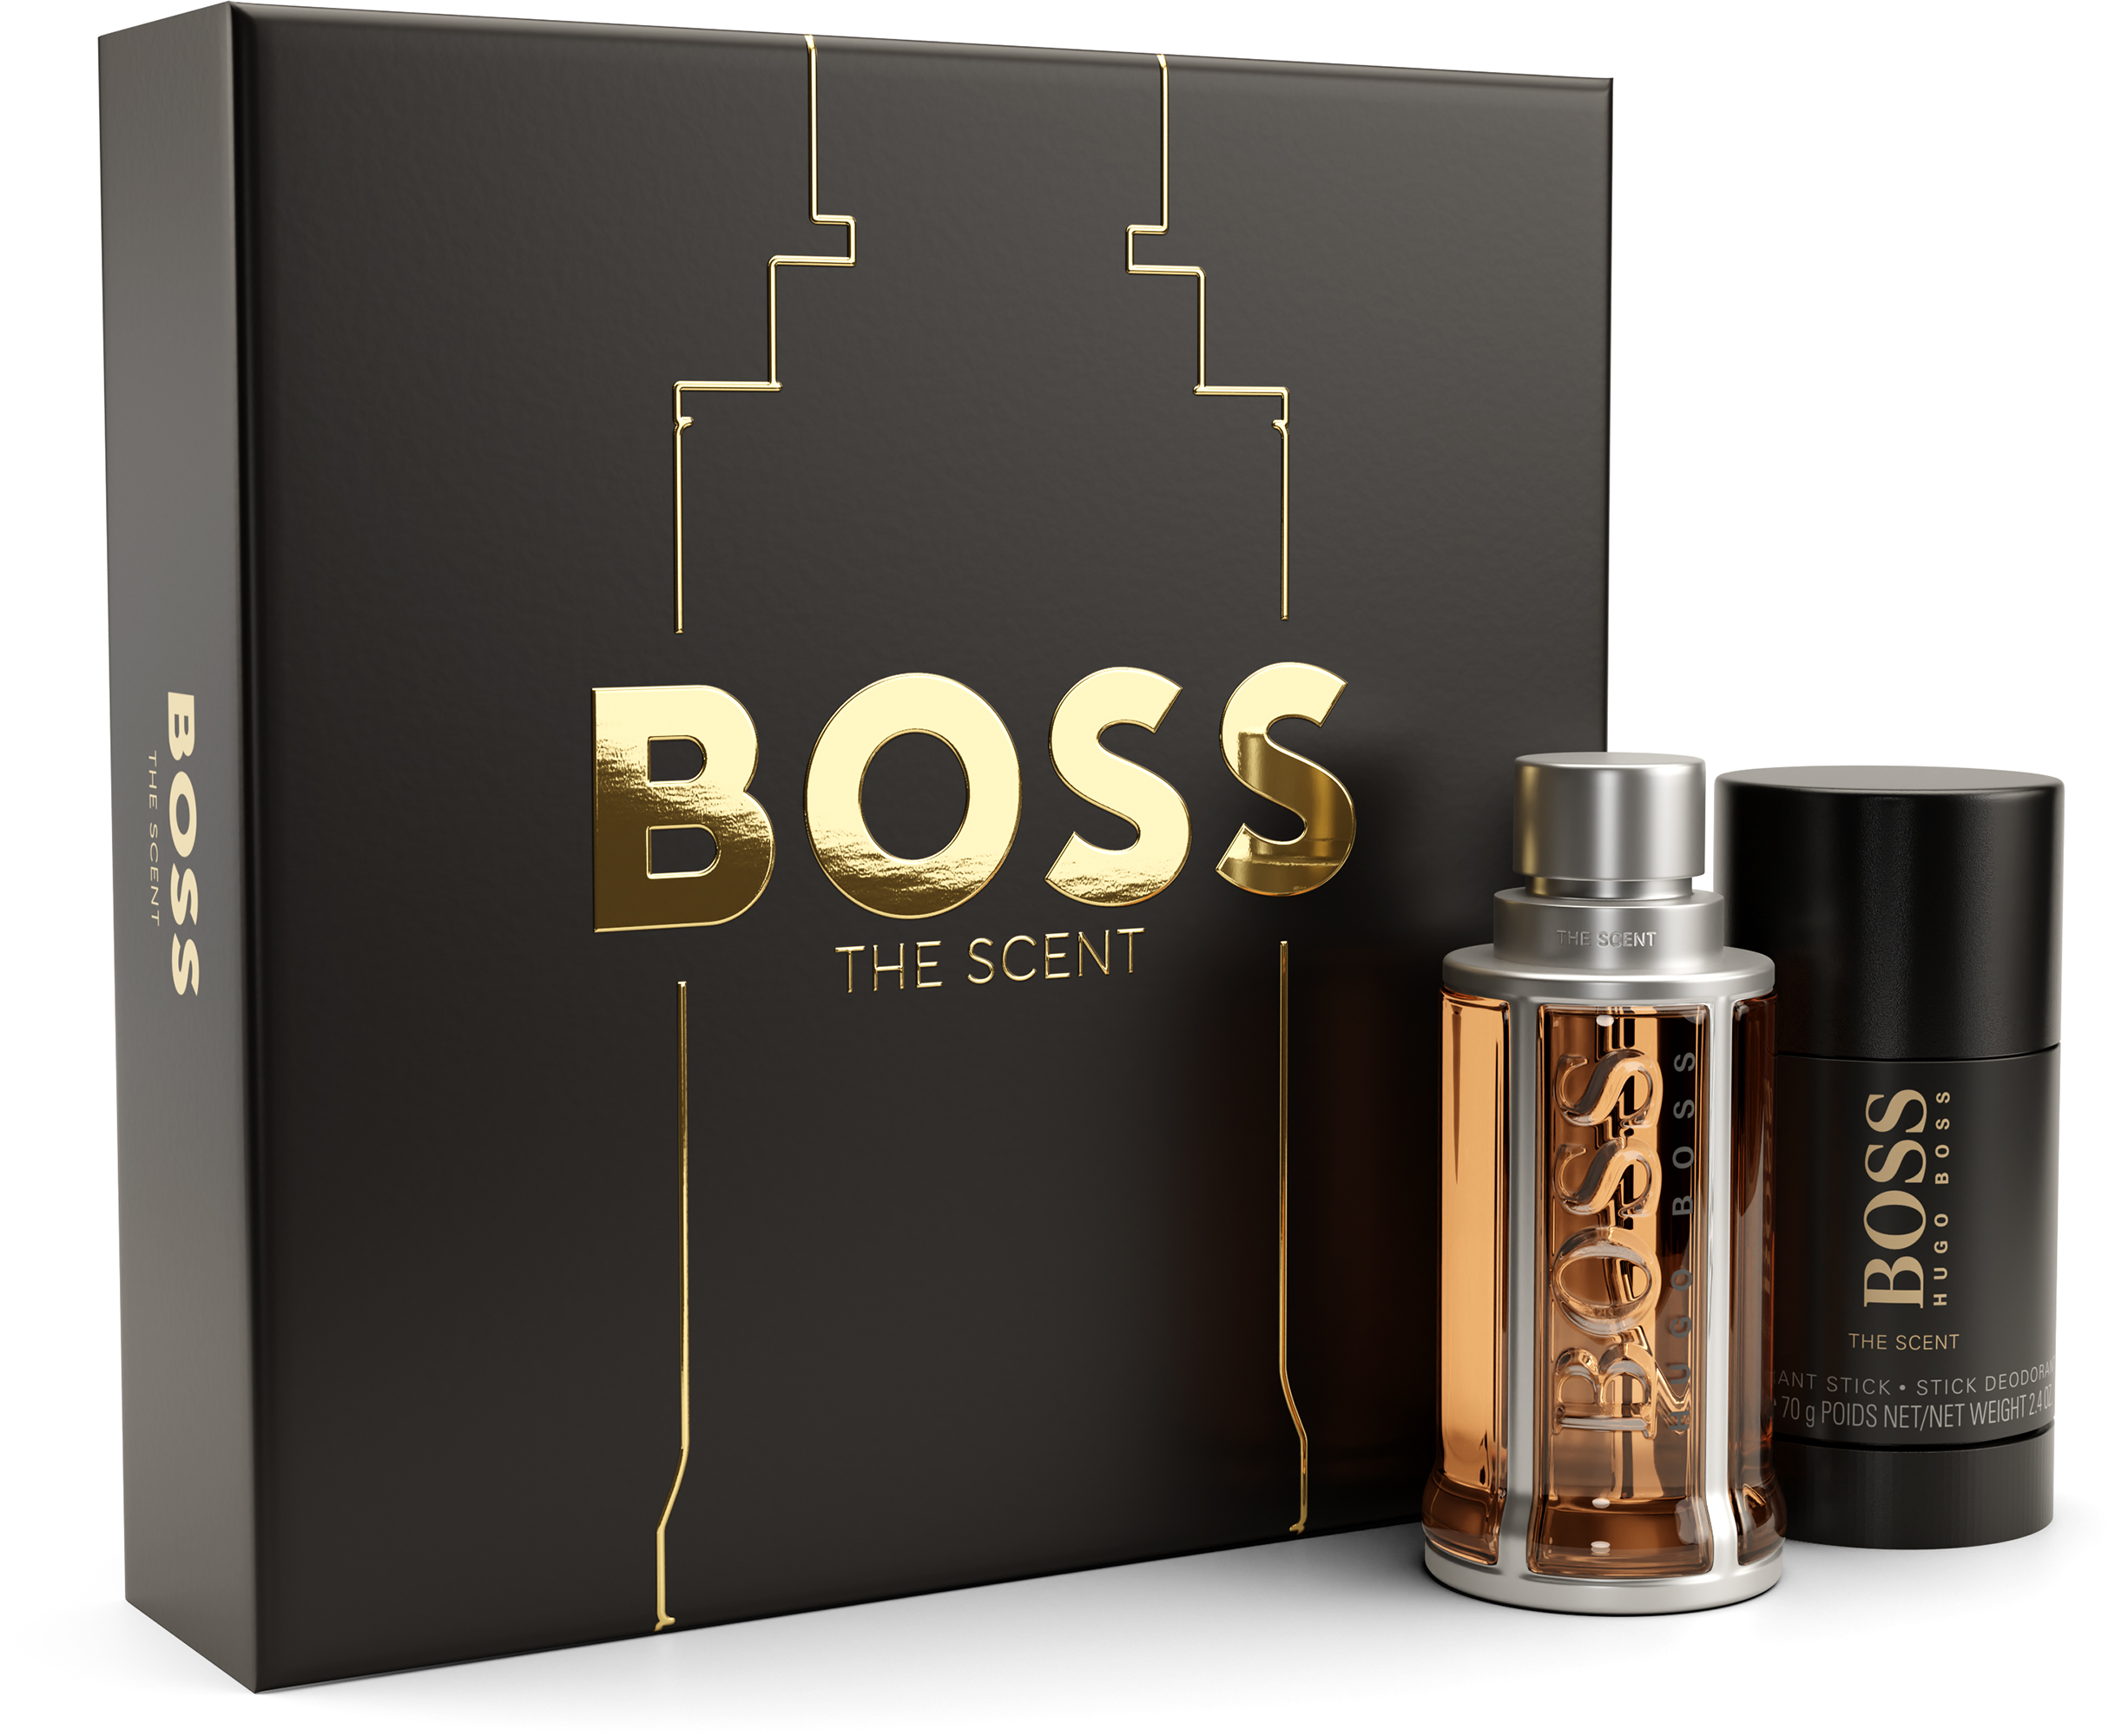 Hugo Boss Boss The Scent Eau de Toilette & Deo Stick Gift Set